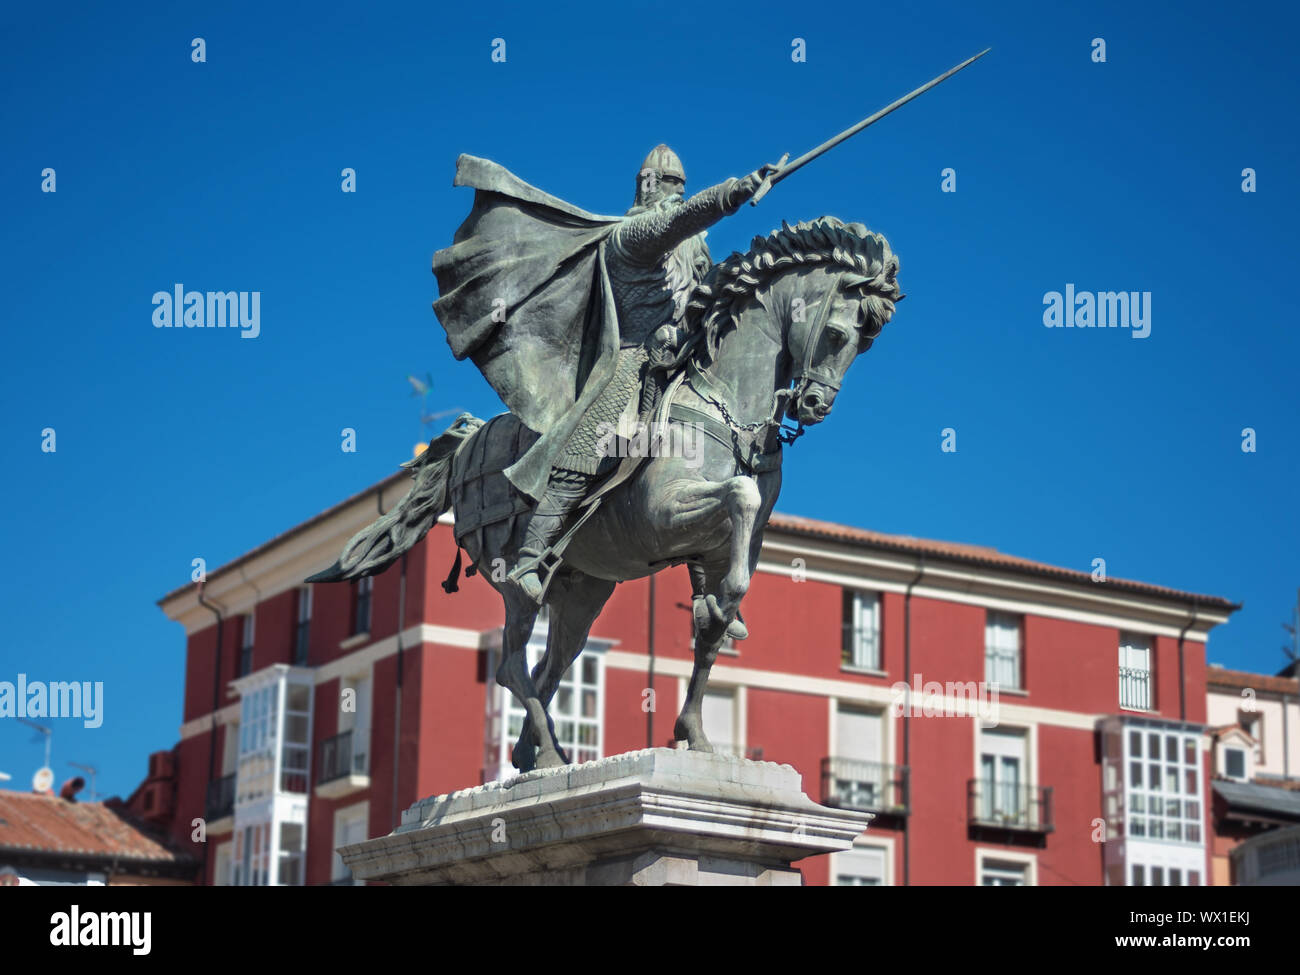 Antica statua della medievale soldato spagnolo Rodrigo Diaz de Vivar, El Cid a Burgos, Spagna. Foto Stock